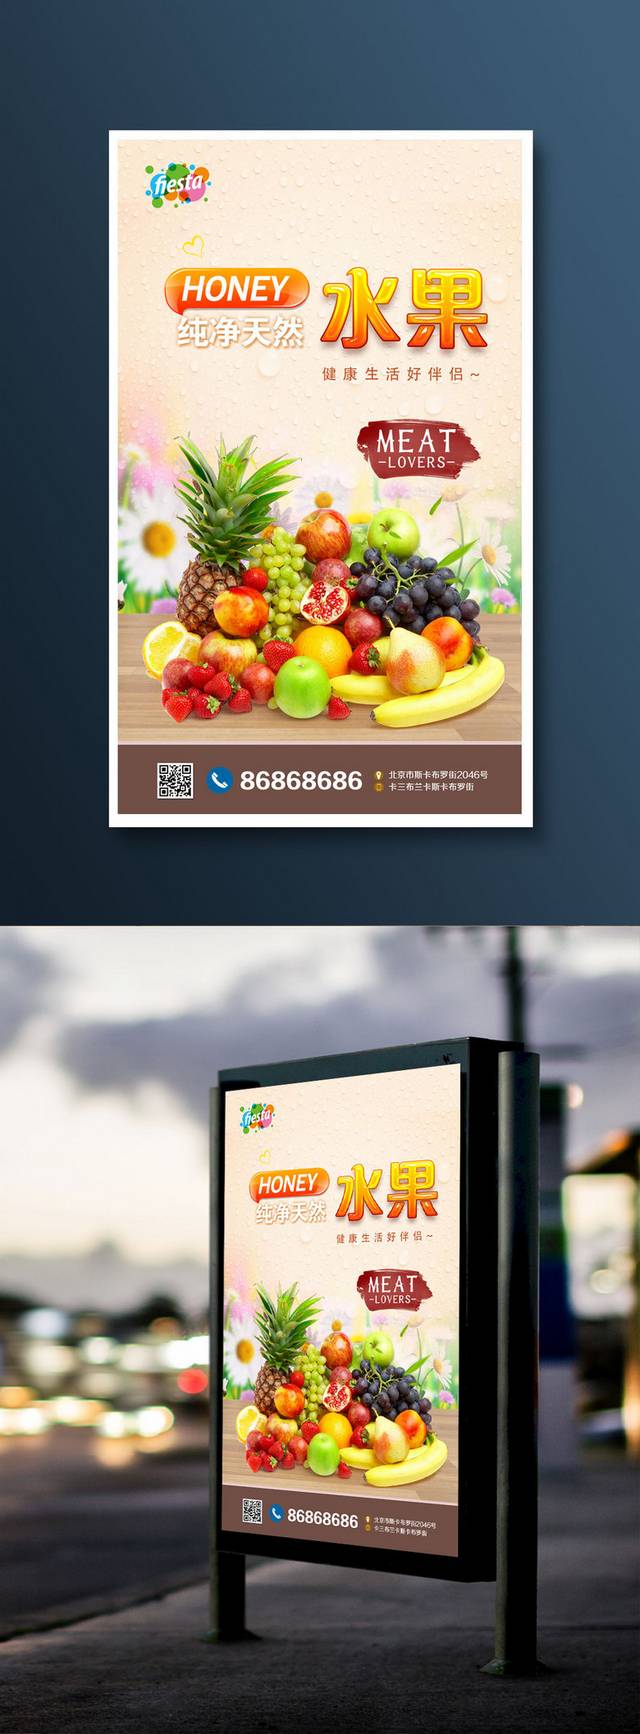 清新水果店宣传海报设计模板